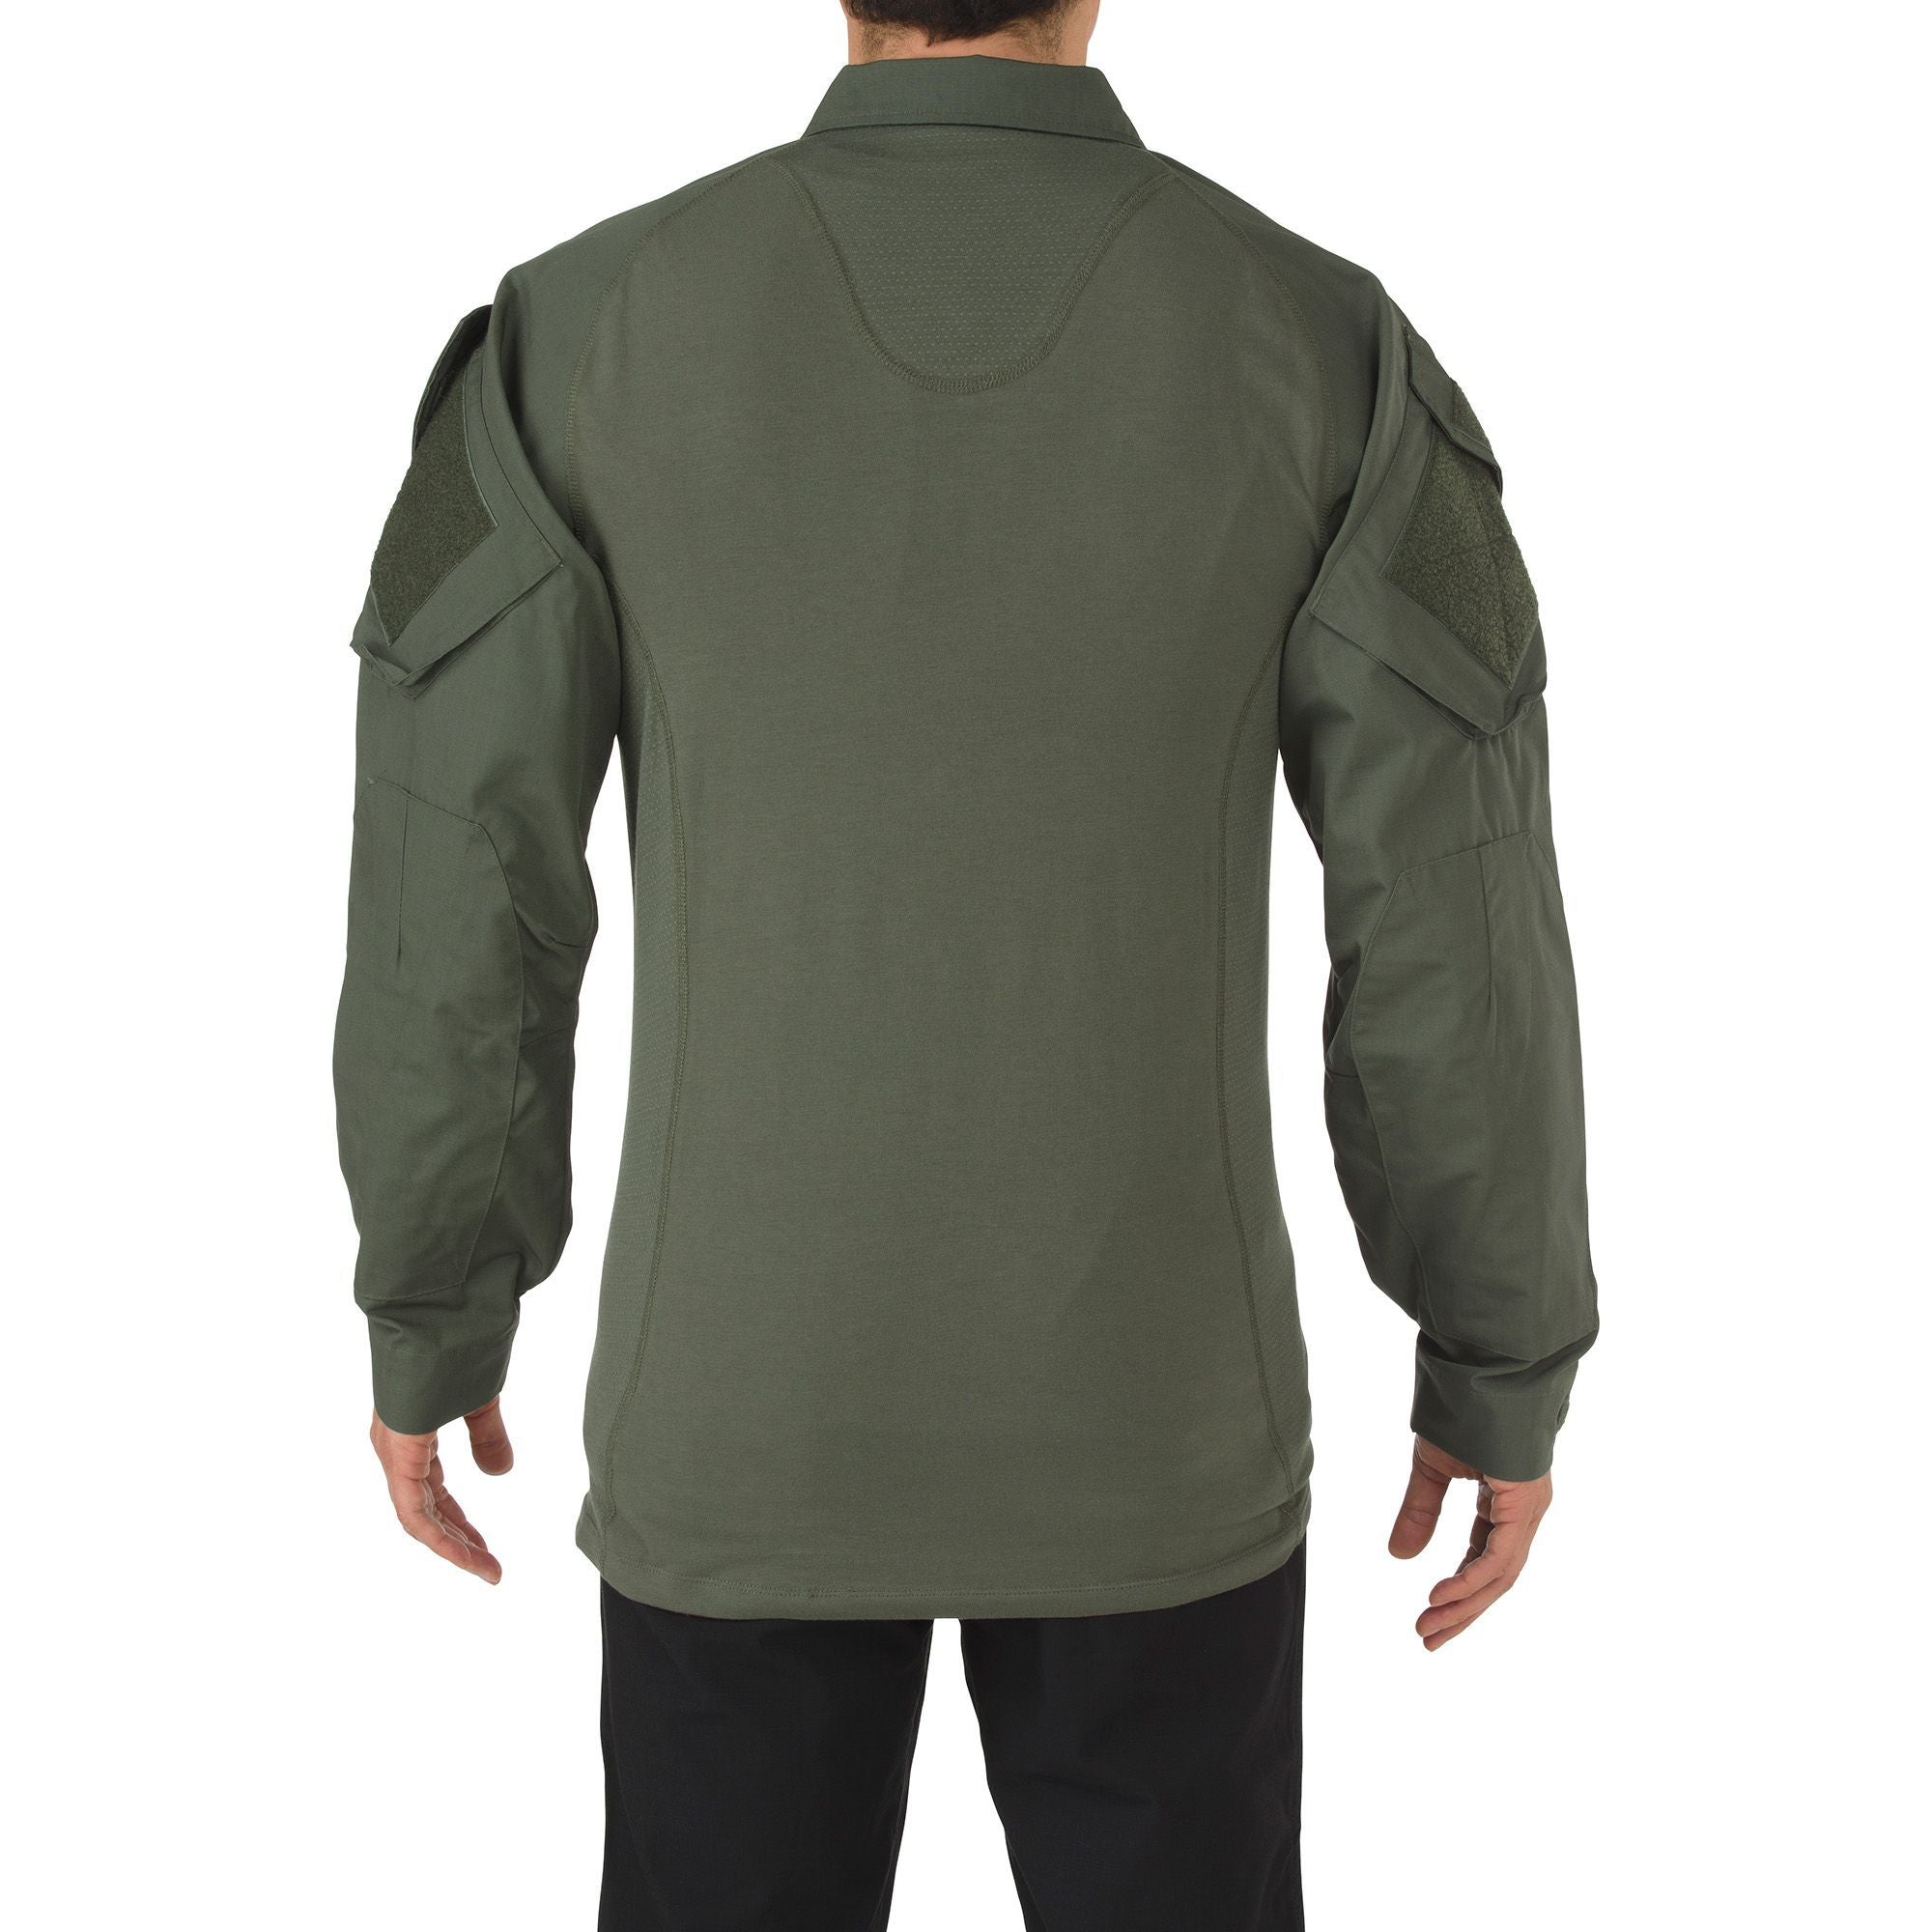 5.11 Tactical Rapid Assault Shirt TDU Green Shirts 5.11 Tactical Extra Small Tactical Gear Supplier Tactical Distributors Australia